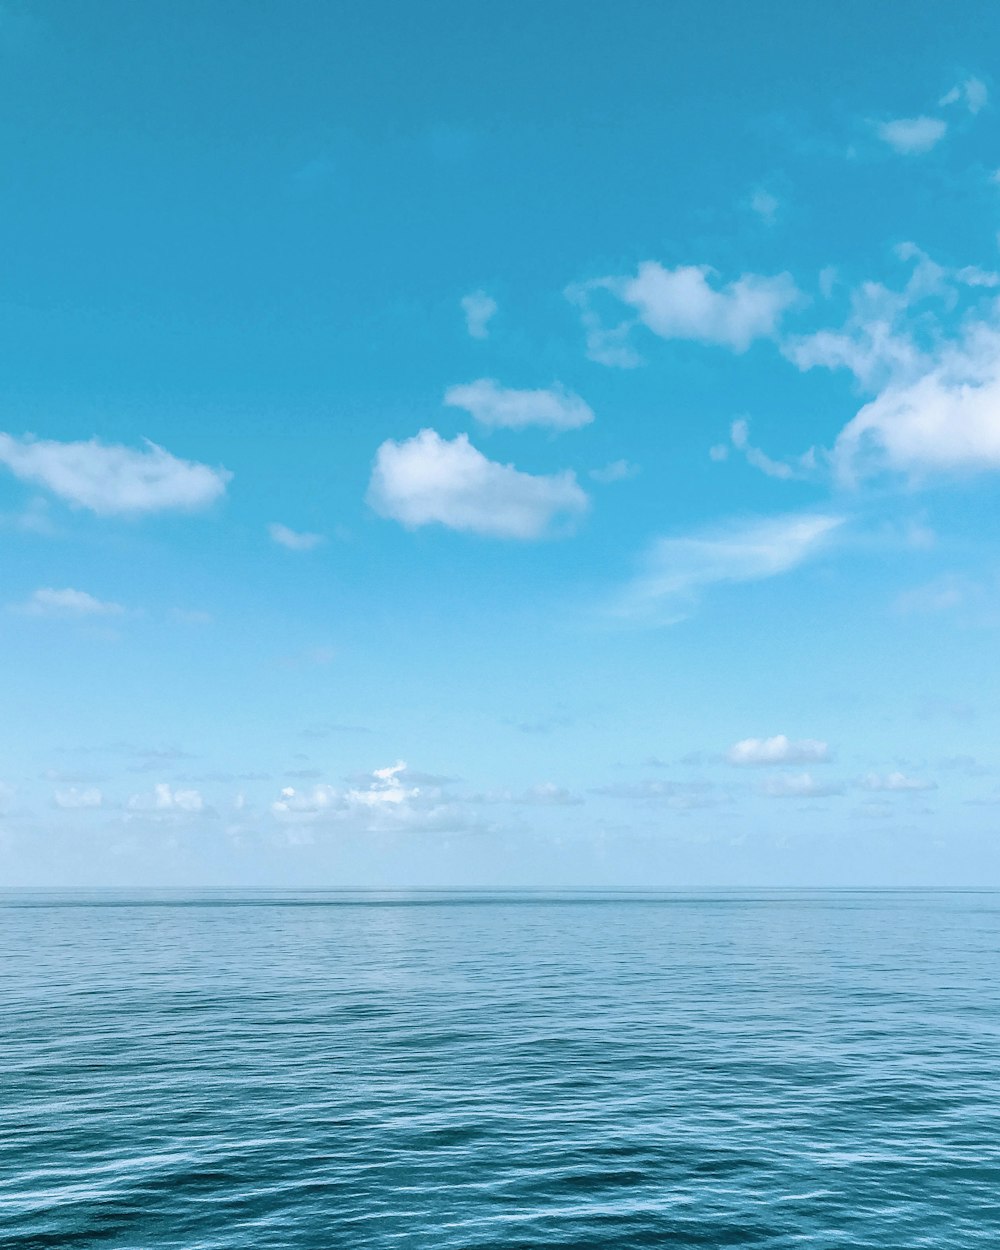 corpo de água azul sob o céu azul e branco durante o dia